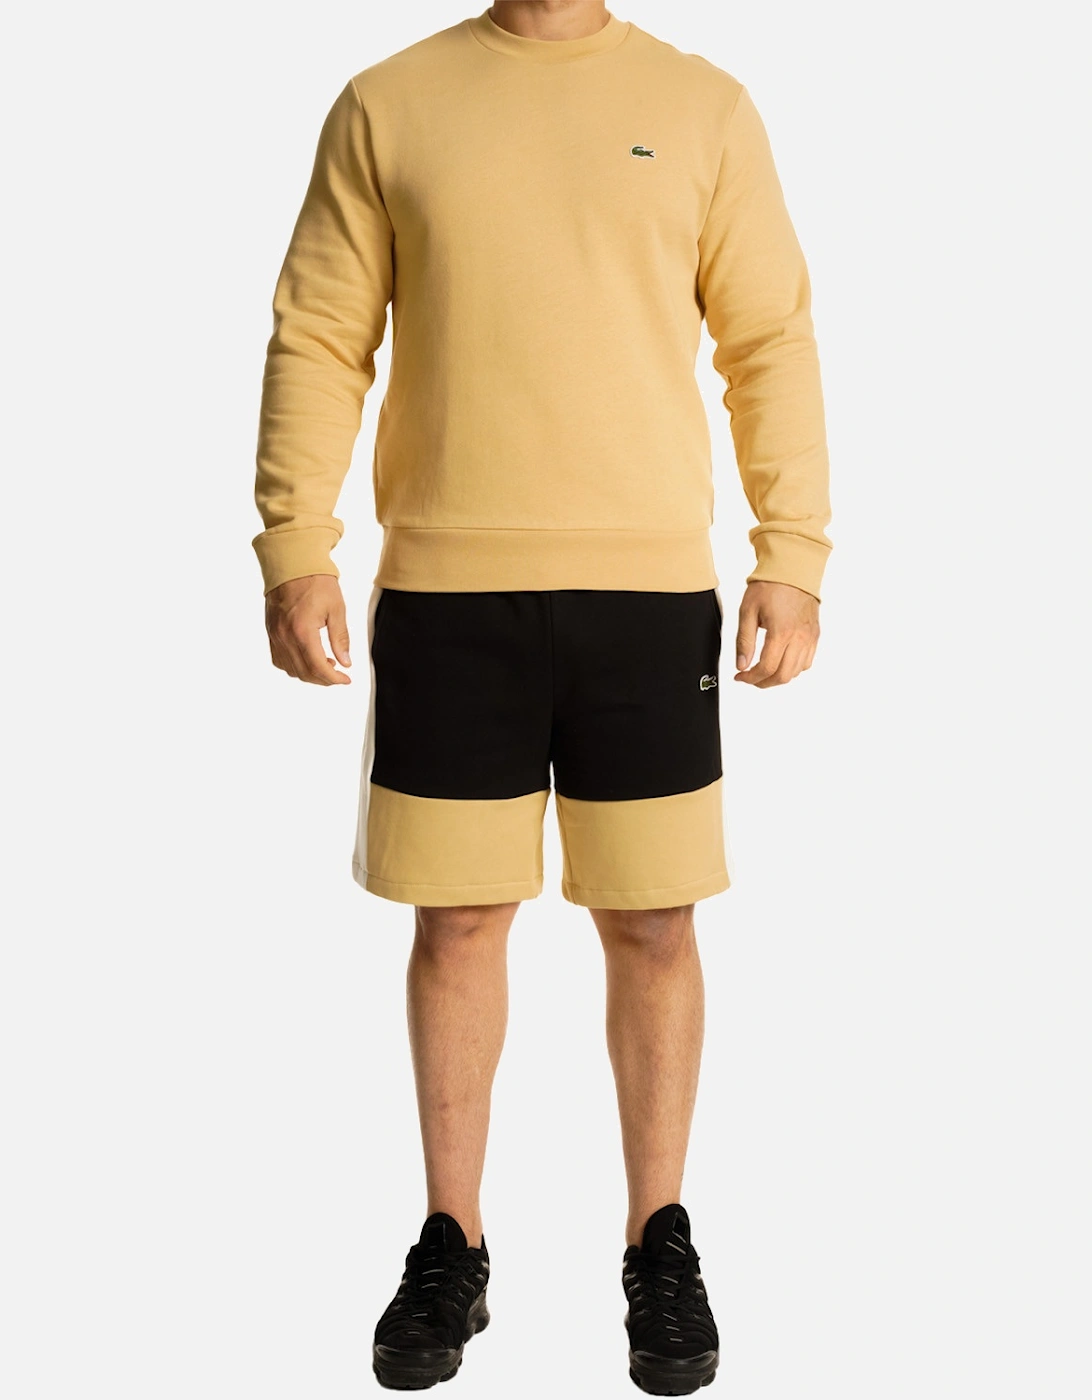 Mens Panel Fleece Shorts (Black/Beige)